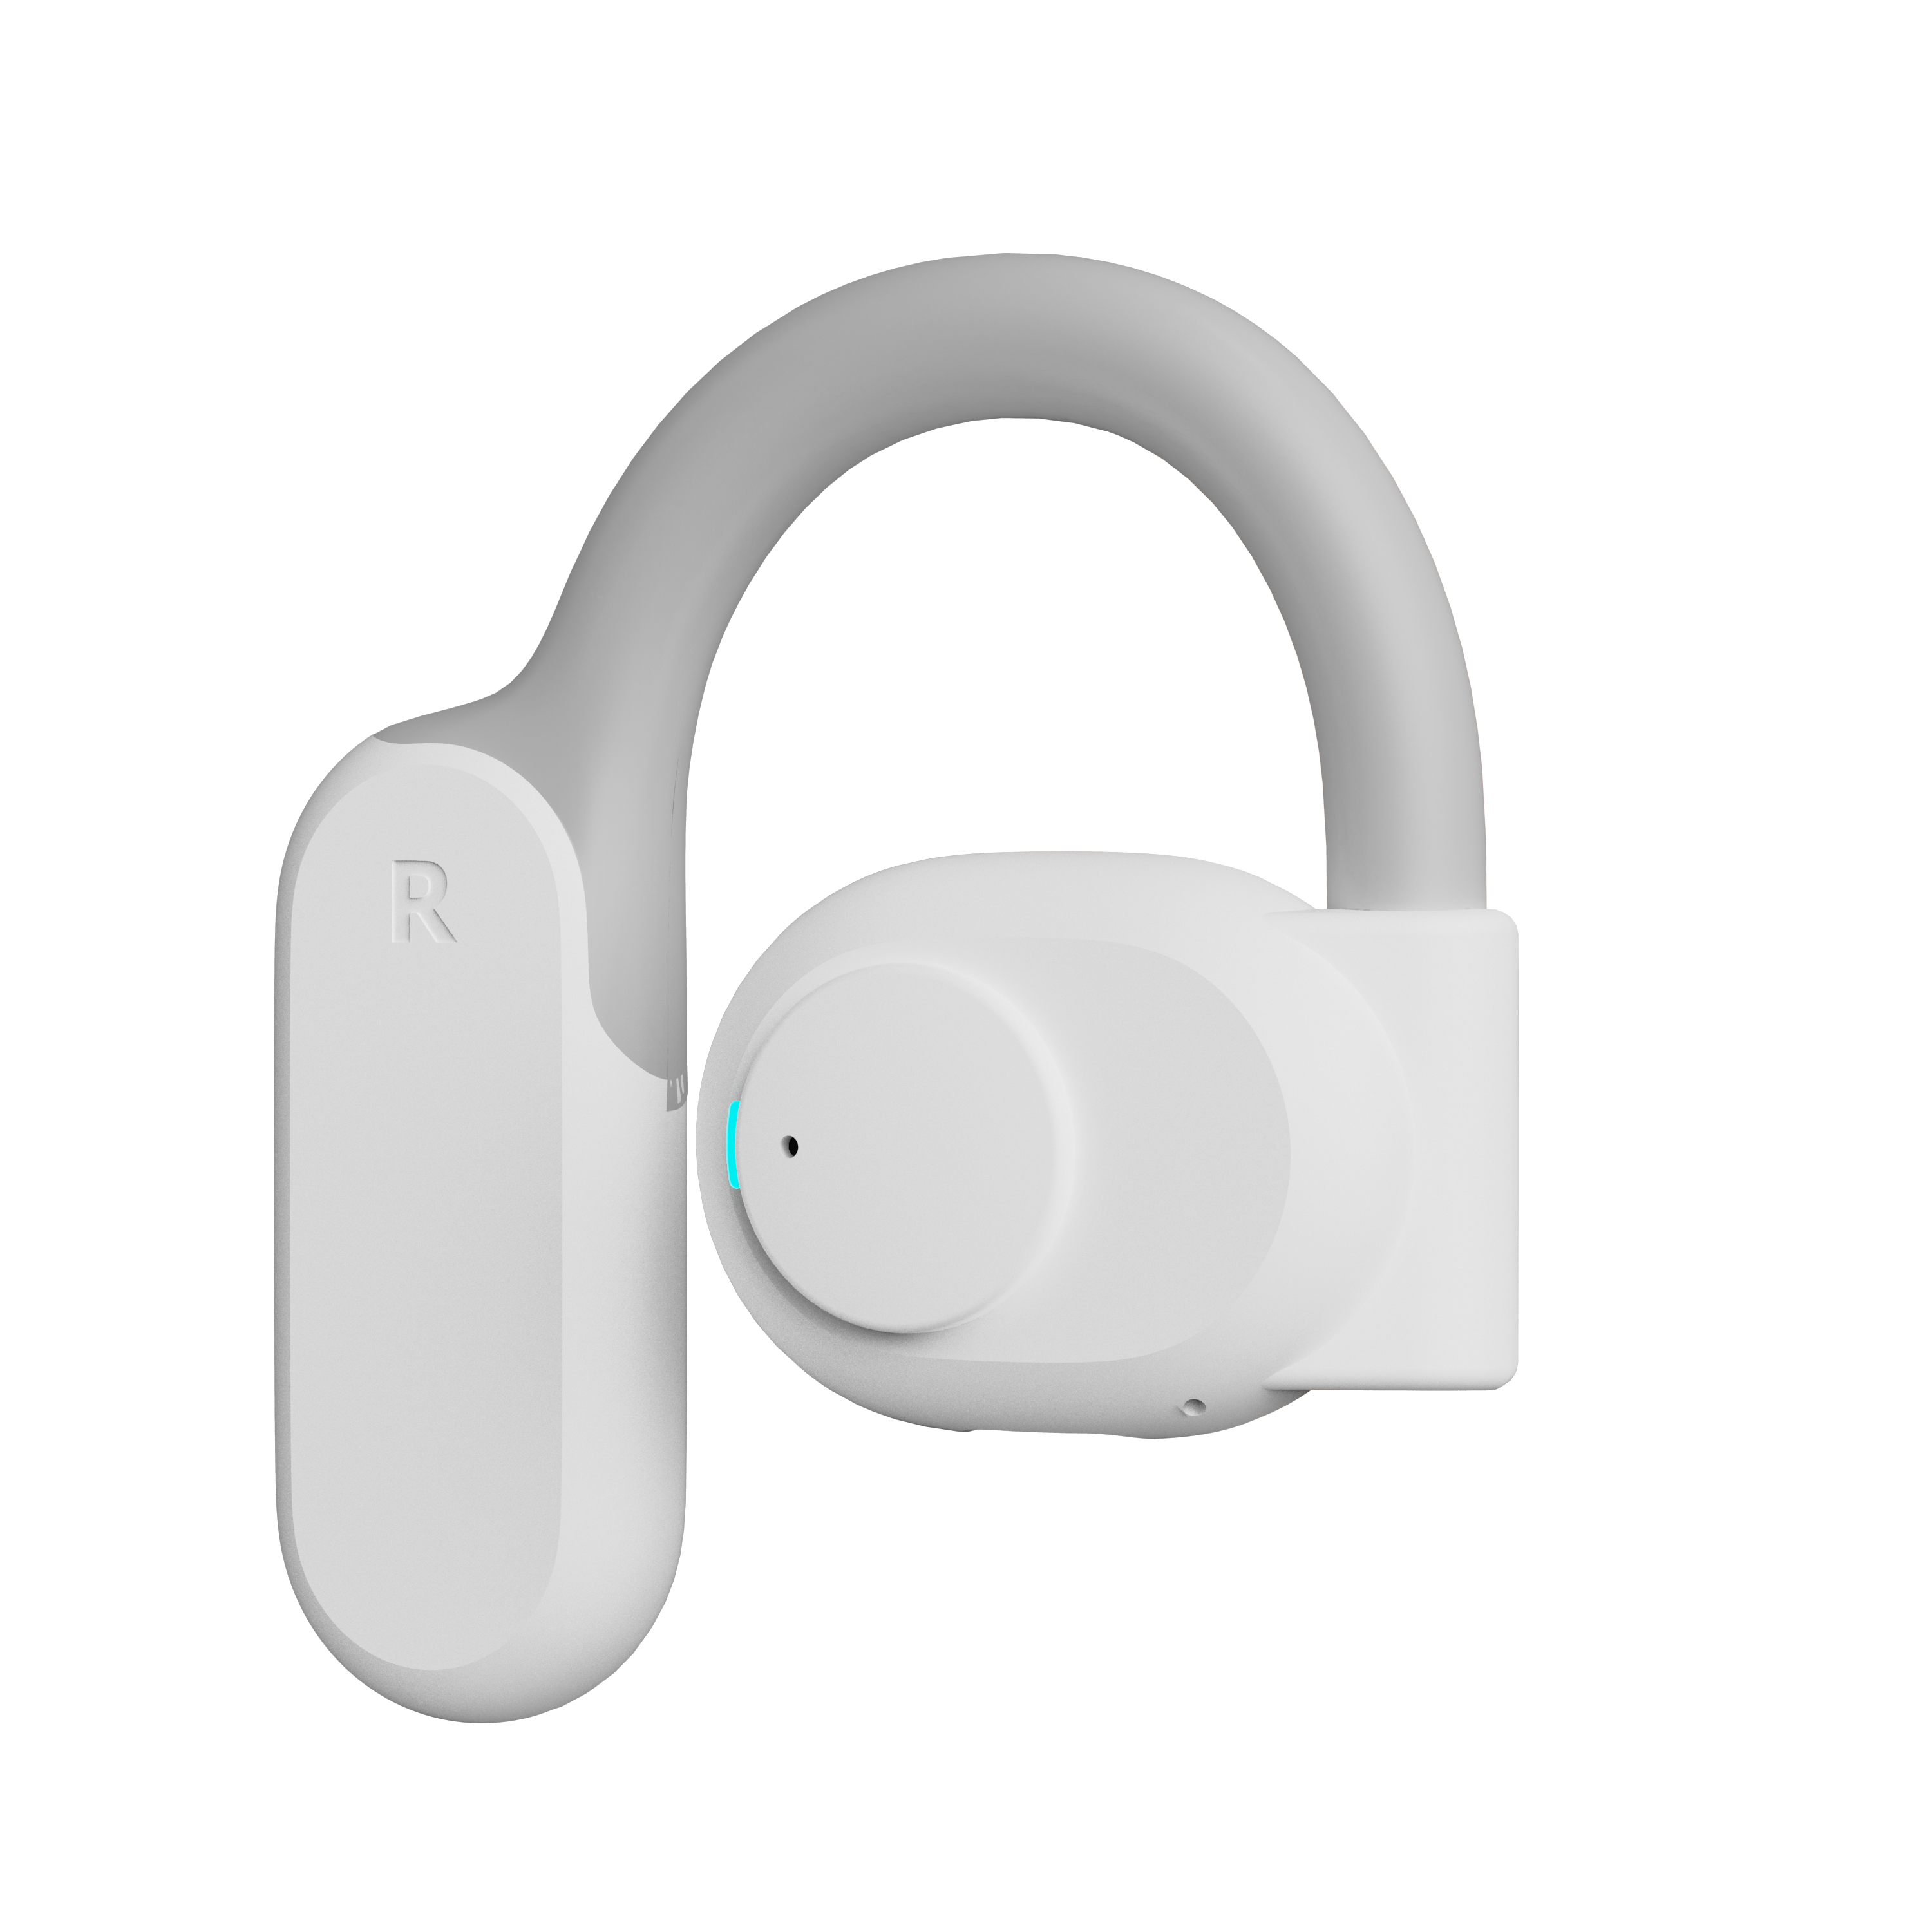 JOWAY H196 Open-Ear Bluetooth 5.3 Wireless Earphones, White